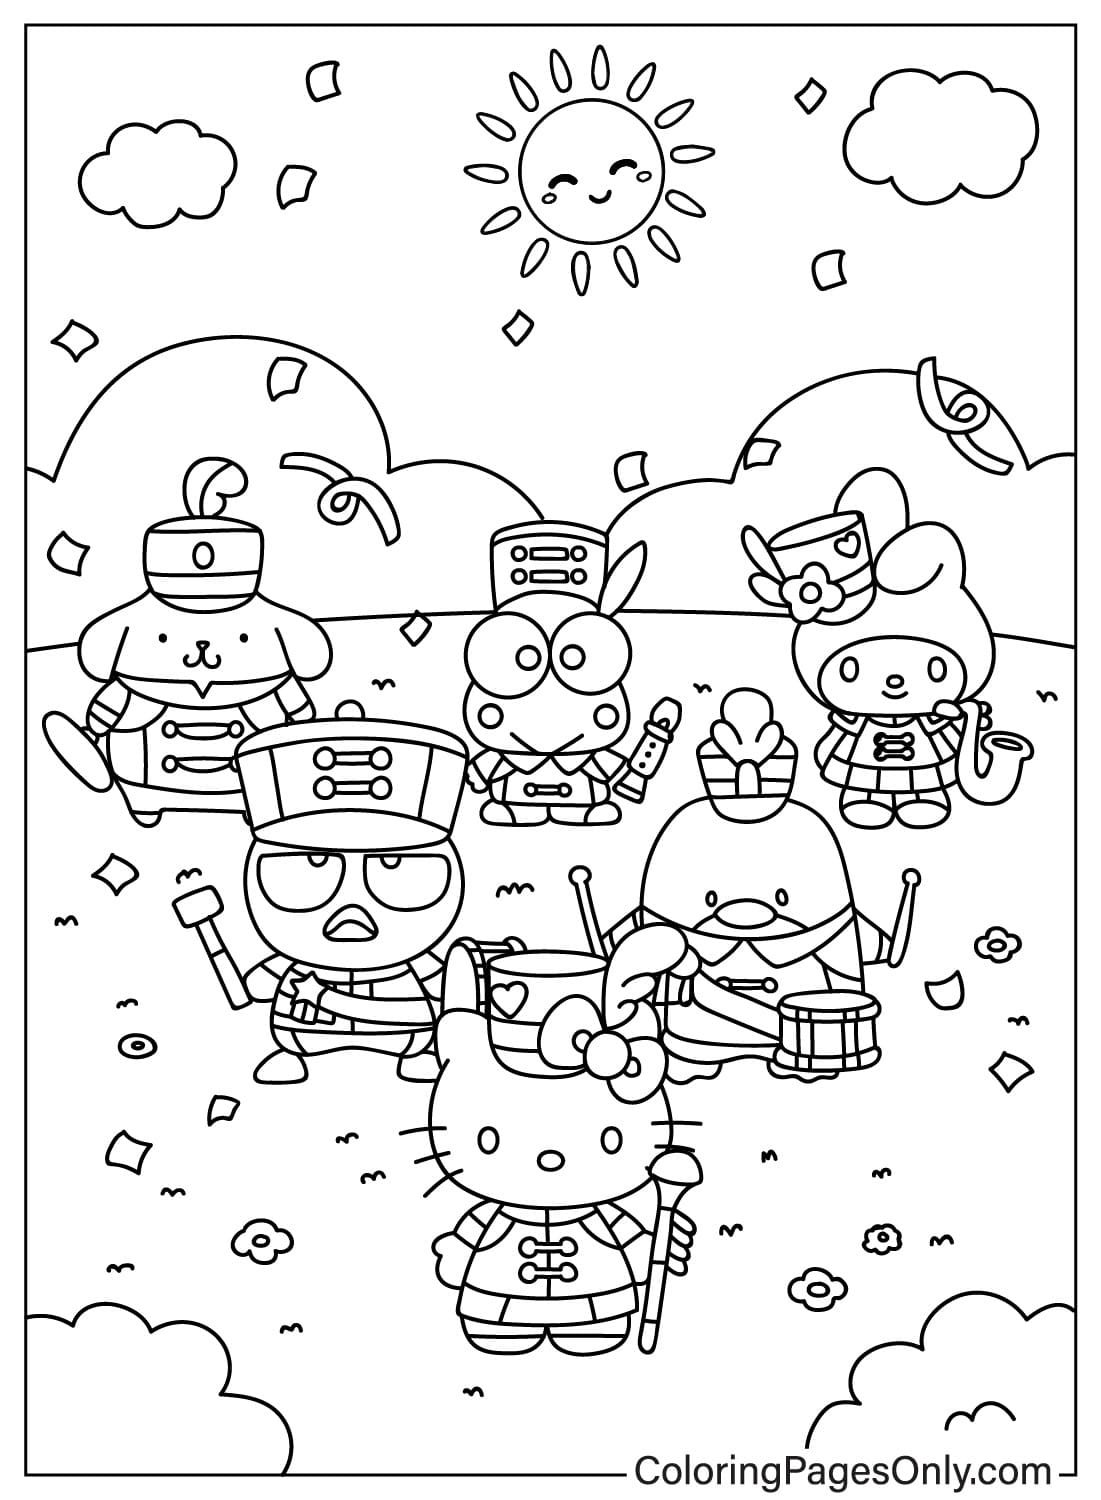 Página para colorear de Sanrio gratis de Hello Kitty